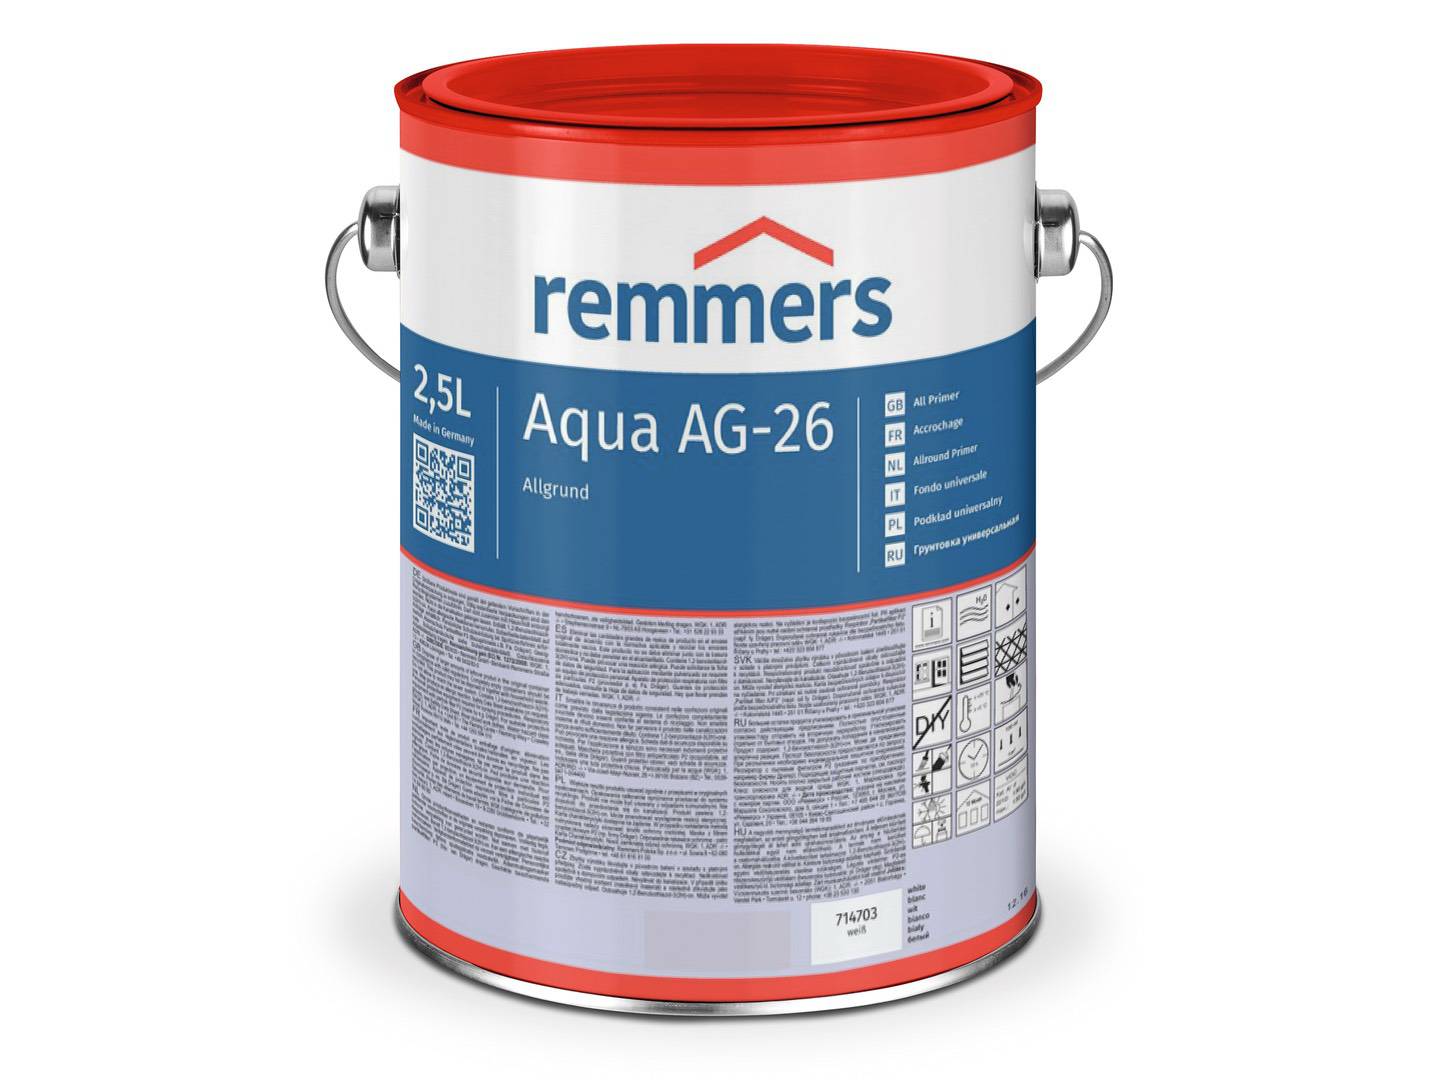 REMMERS Aqua AG-26-Allgrund rotbraun 2,50 l